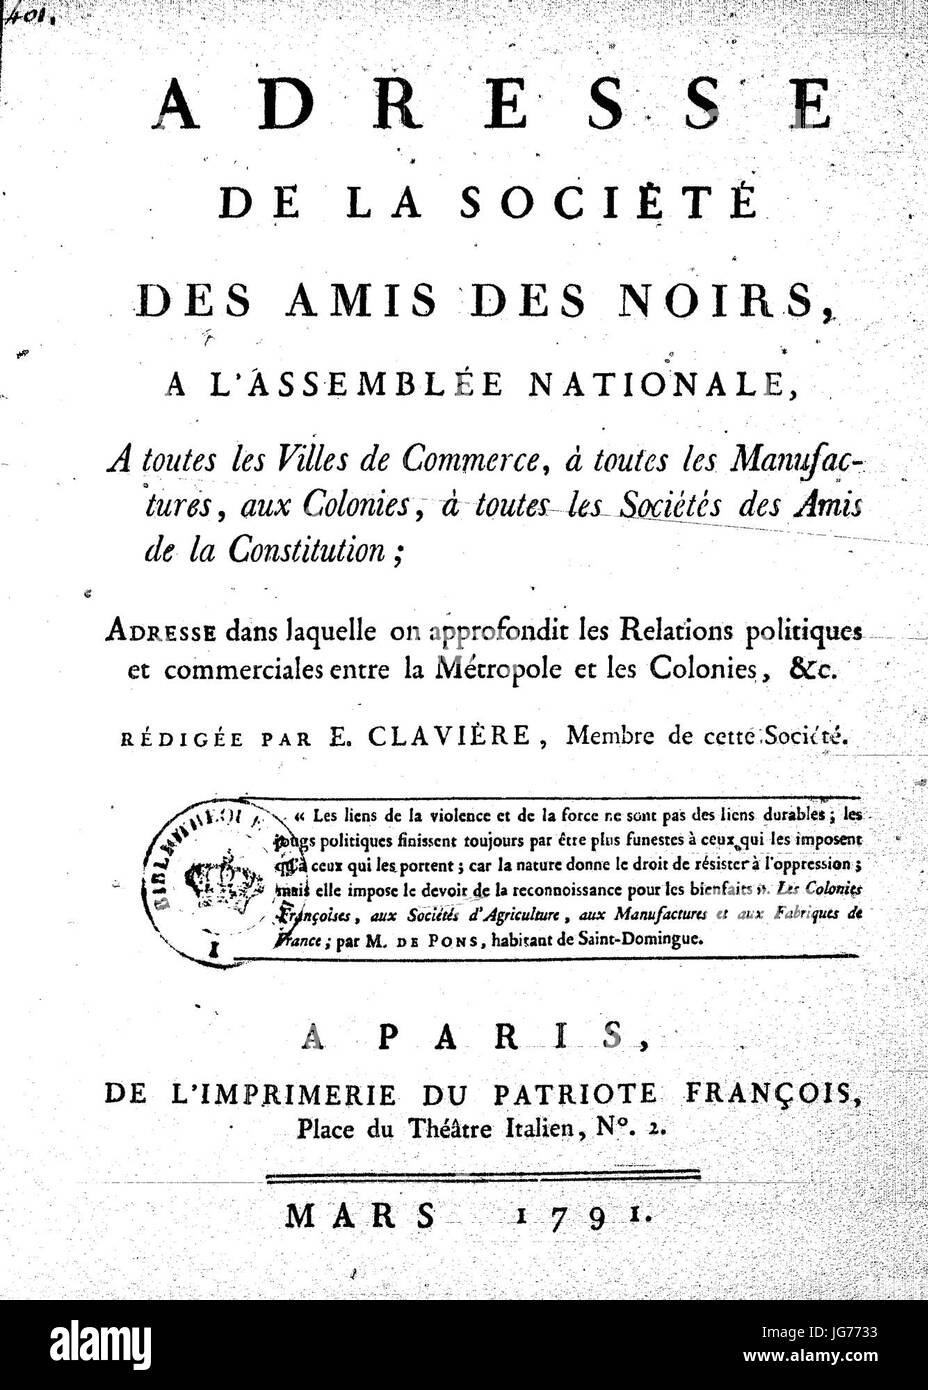 Société des amis des noirs mars 1791 Stock Photo